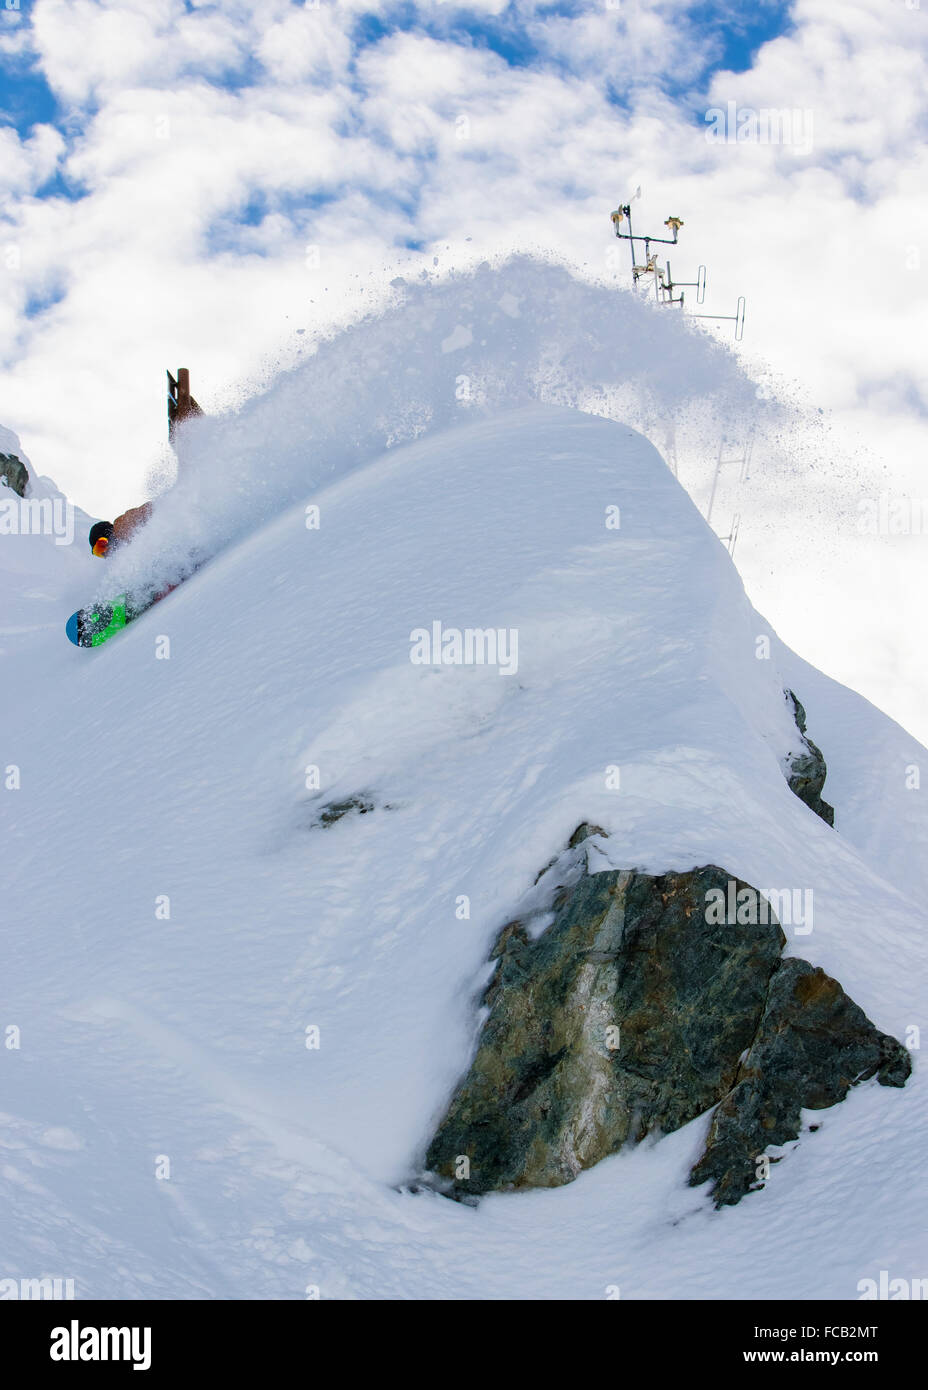 Snowboarder Slashing Powder Stock Photo